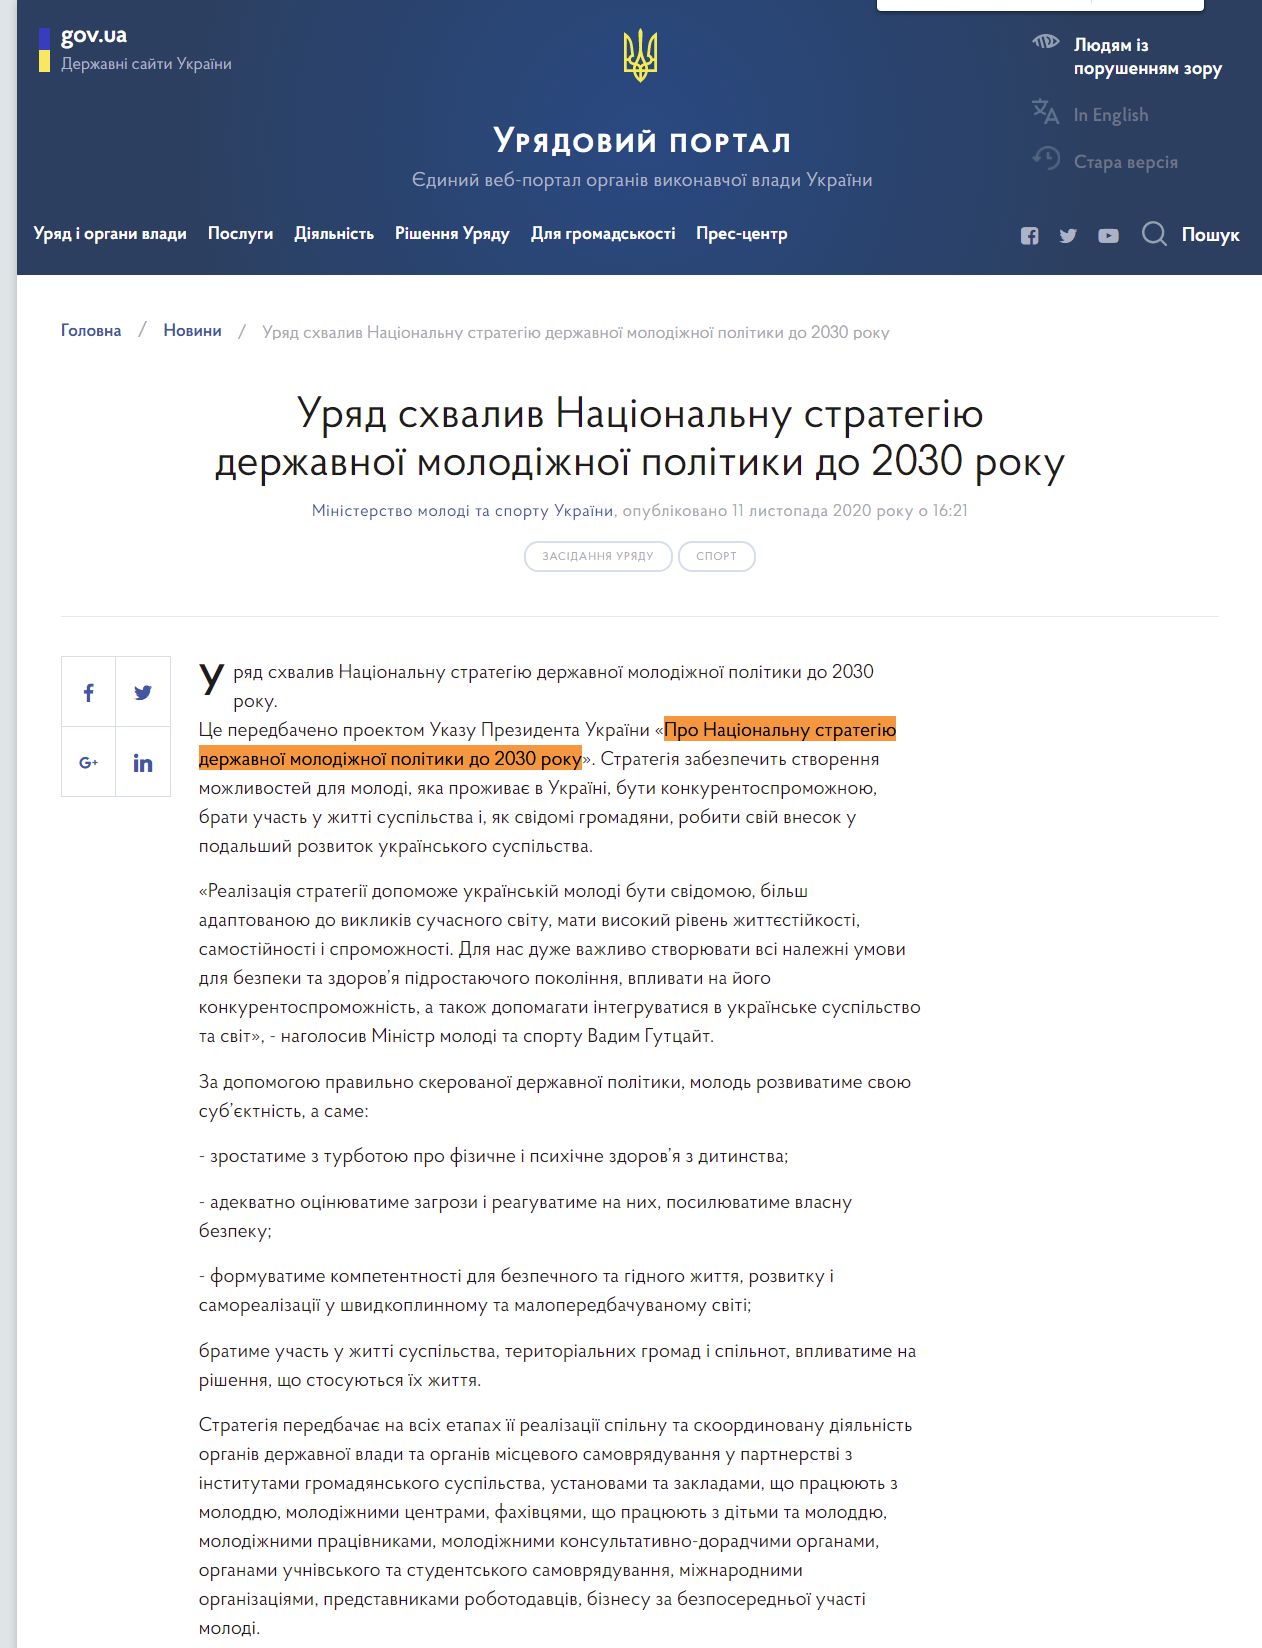 https://www.kmu.gov.ua/news/uryad-shvaliv-nacionalnu-strategiyu-derzhavnoyi-molodizhnoyi-politiki-do-2030-roku